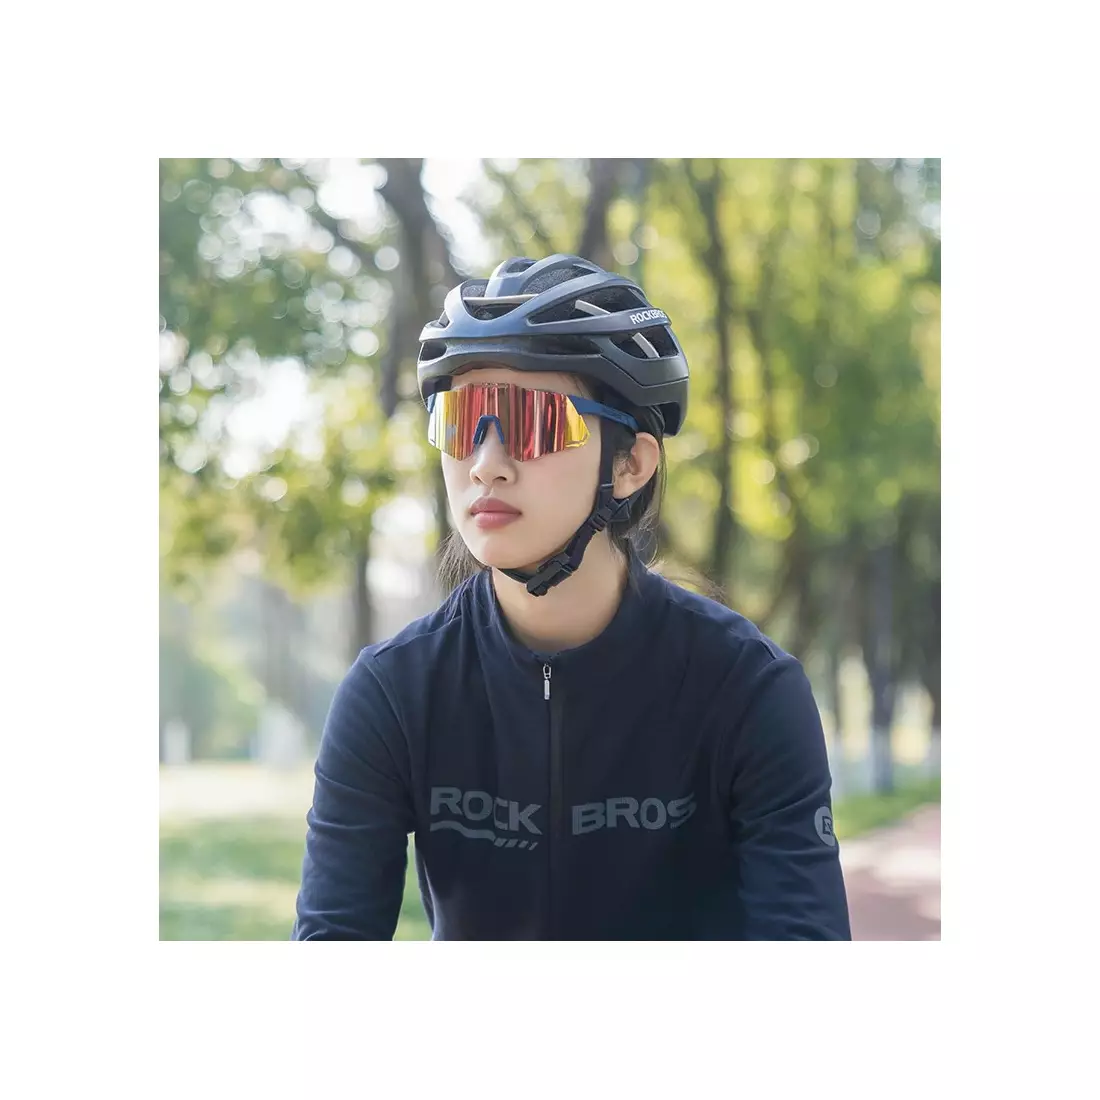 Rockbros 14110001001 okulary rowerowe / sportowe z polaryzacją niebieski 